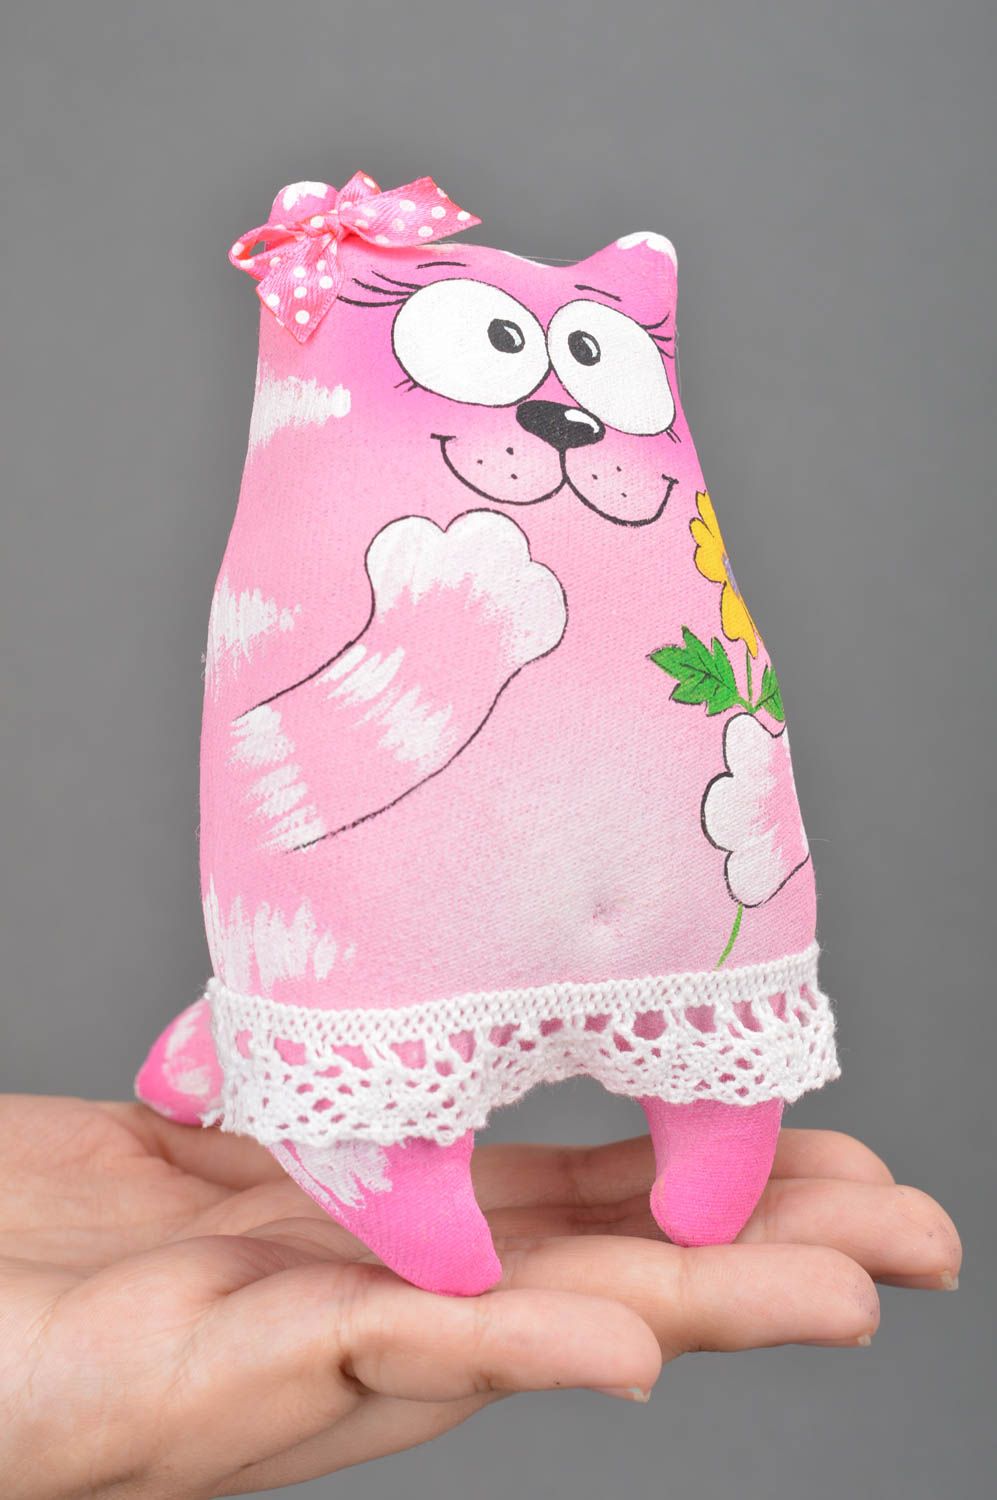 Jouet mou chat rose en tissu de coton peint de couleurs acryliques fait main photo 3